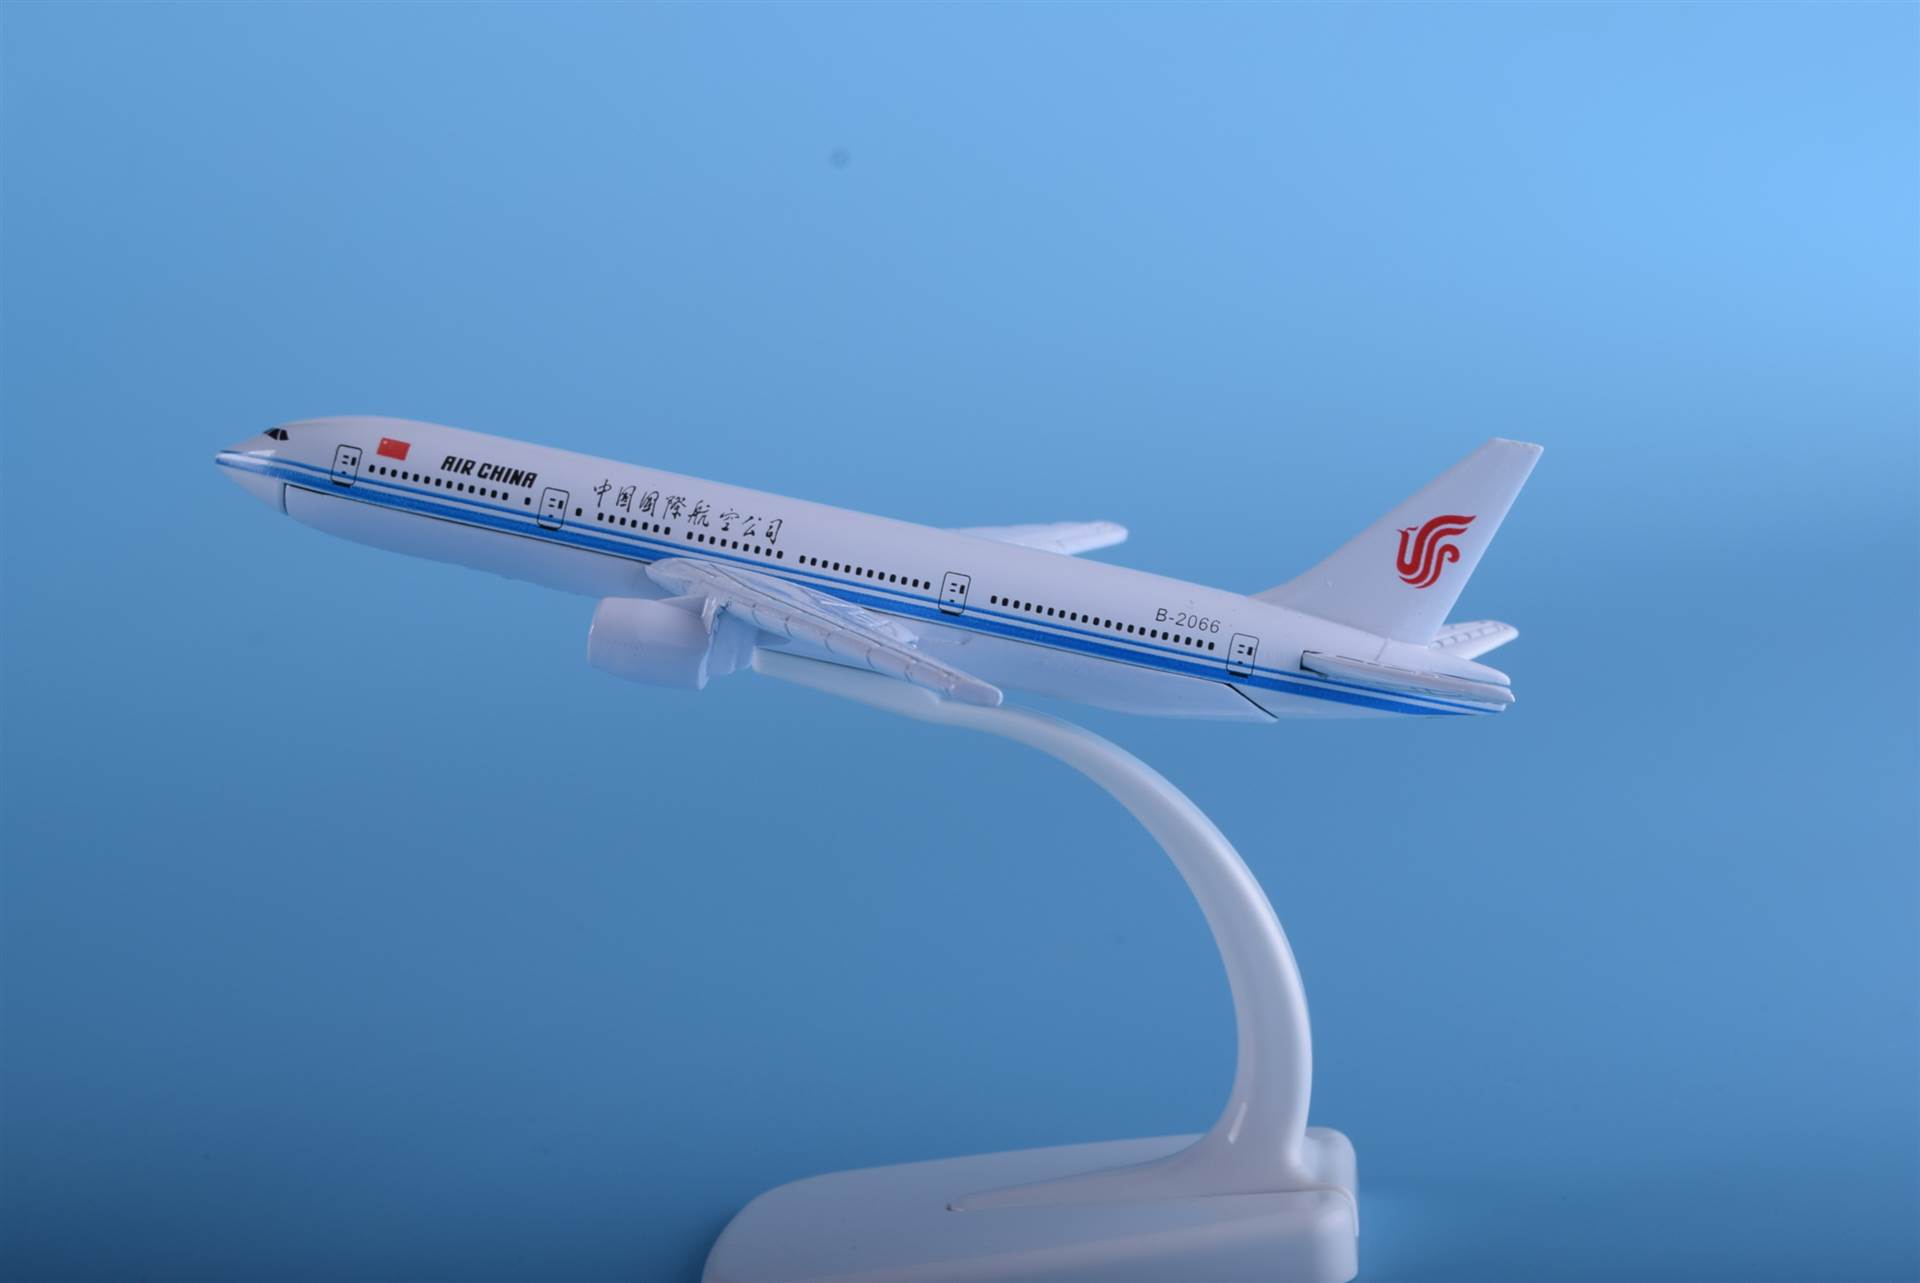 飞机模型波音777国航16厘米仿真模型礼品玩具办公用品